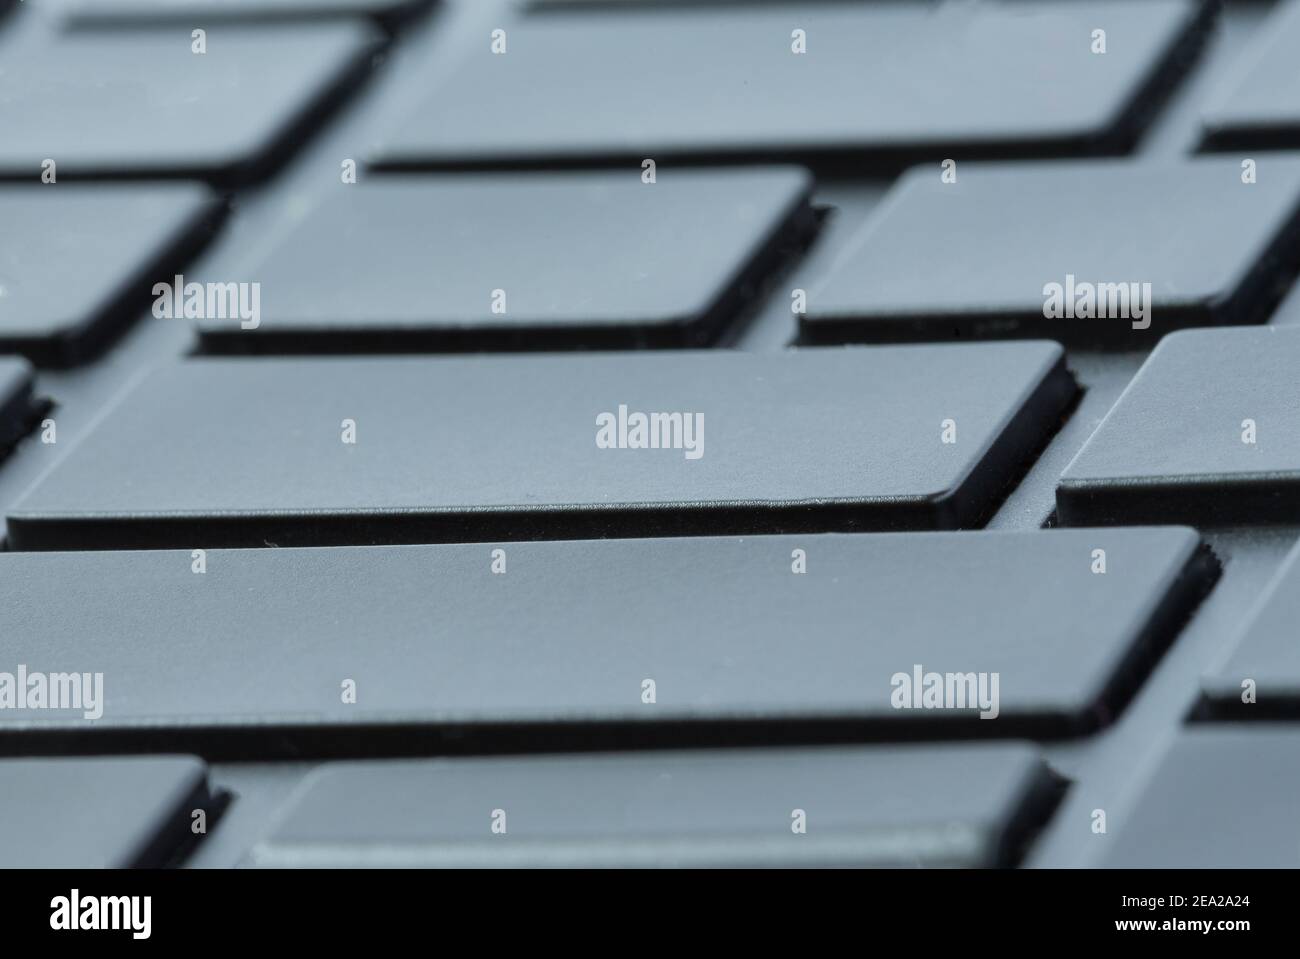 Detail der schwarzen Tastatur ohne irgendwelche Briefe auf Tasten  Stockfotografie - Alamy